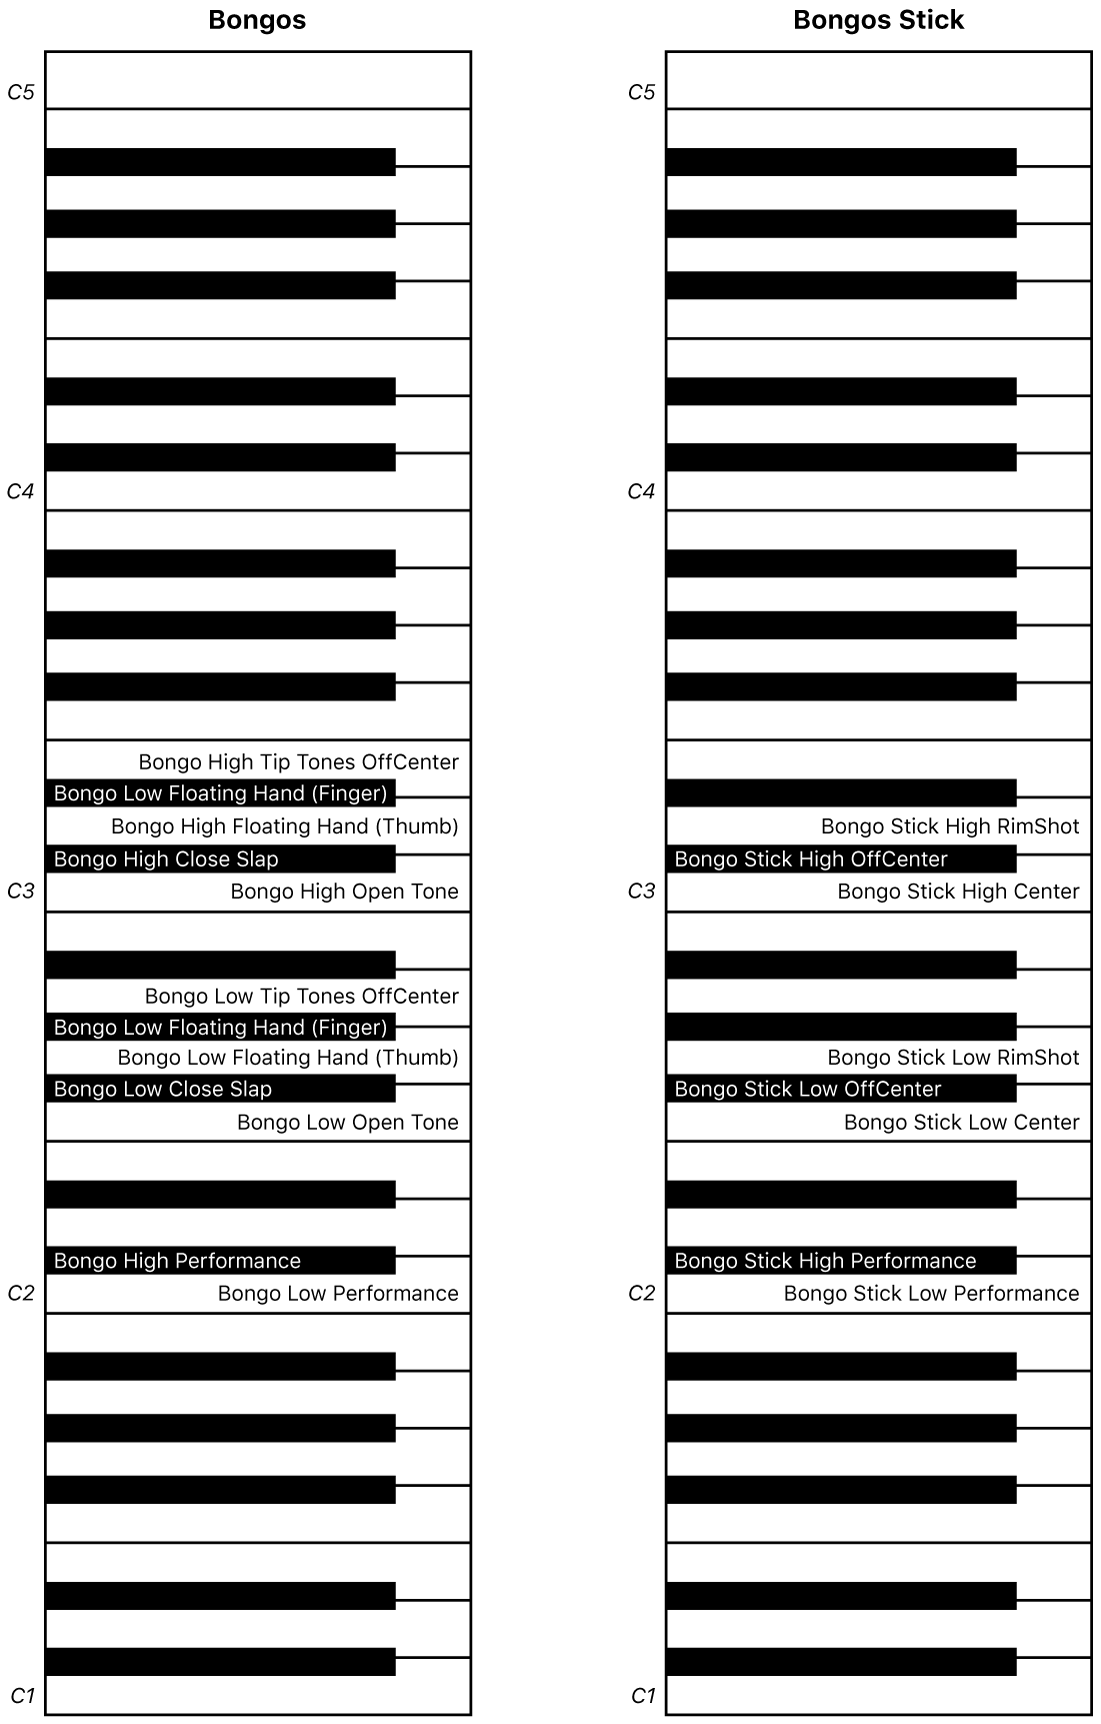 Abbildung. Keyboard-Zuweisung für Bongos- und Bongos Stick-Performance